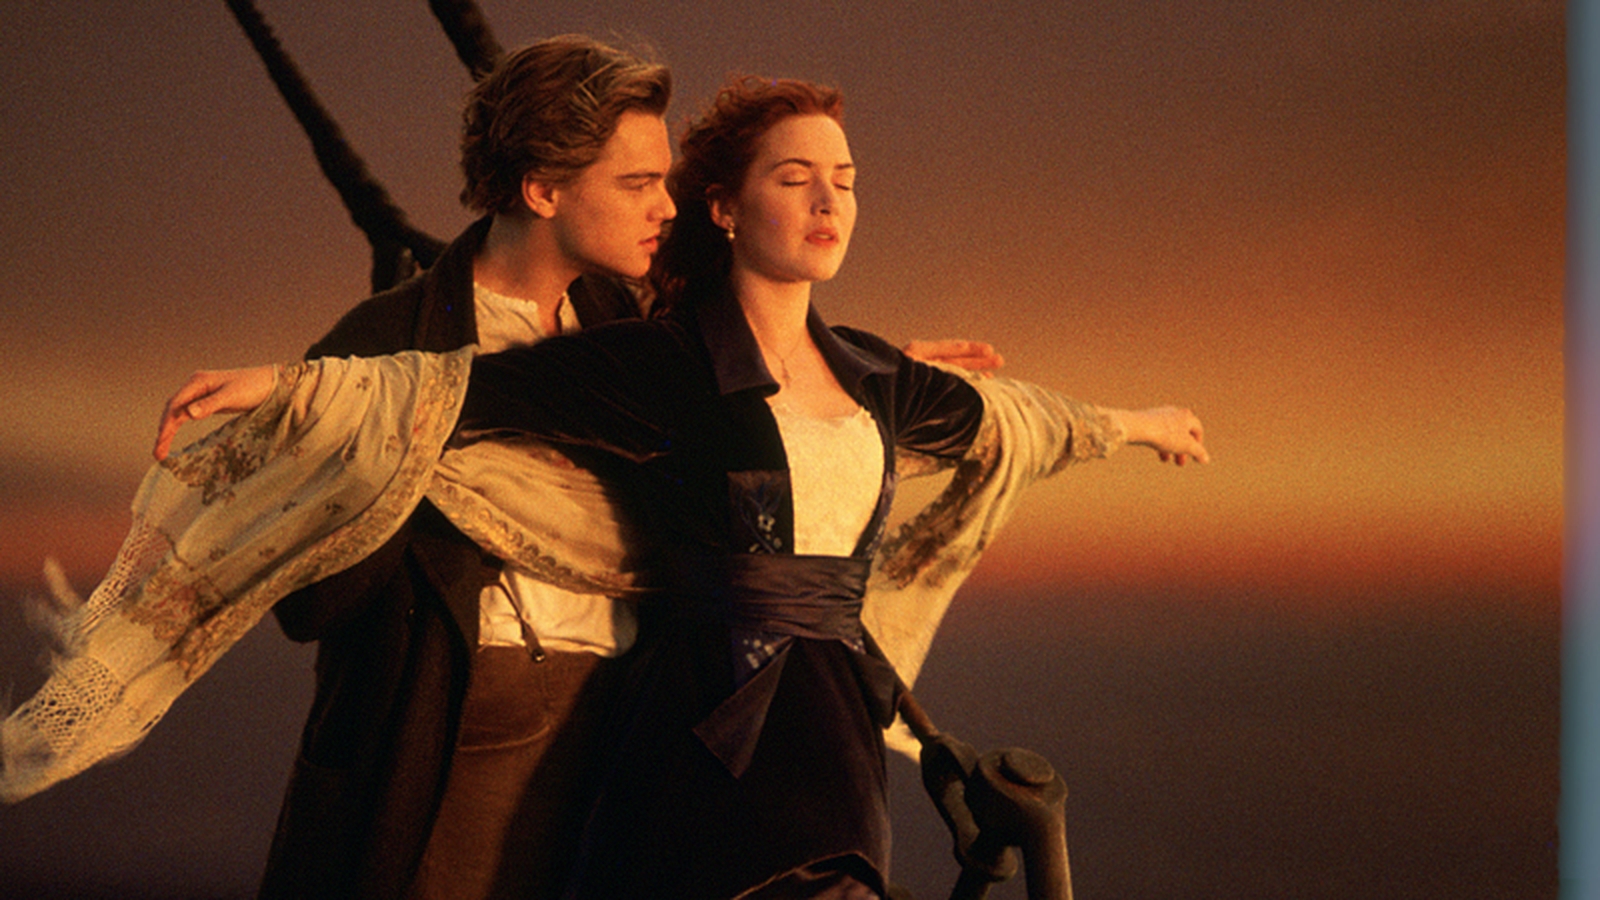 Ator espera que pandemia faça fãs esquecerem cena polêmica de Titanic